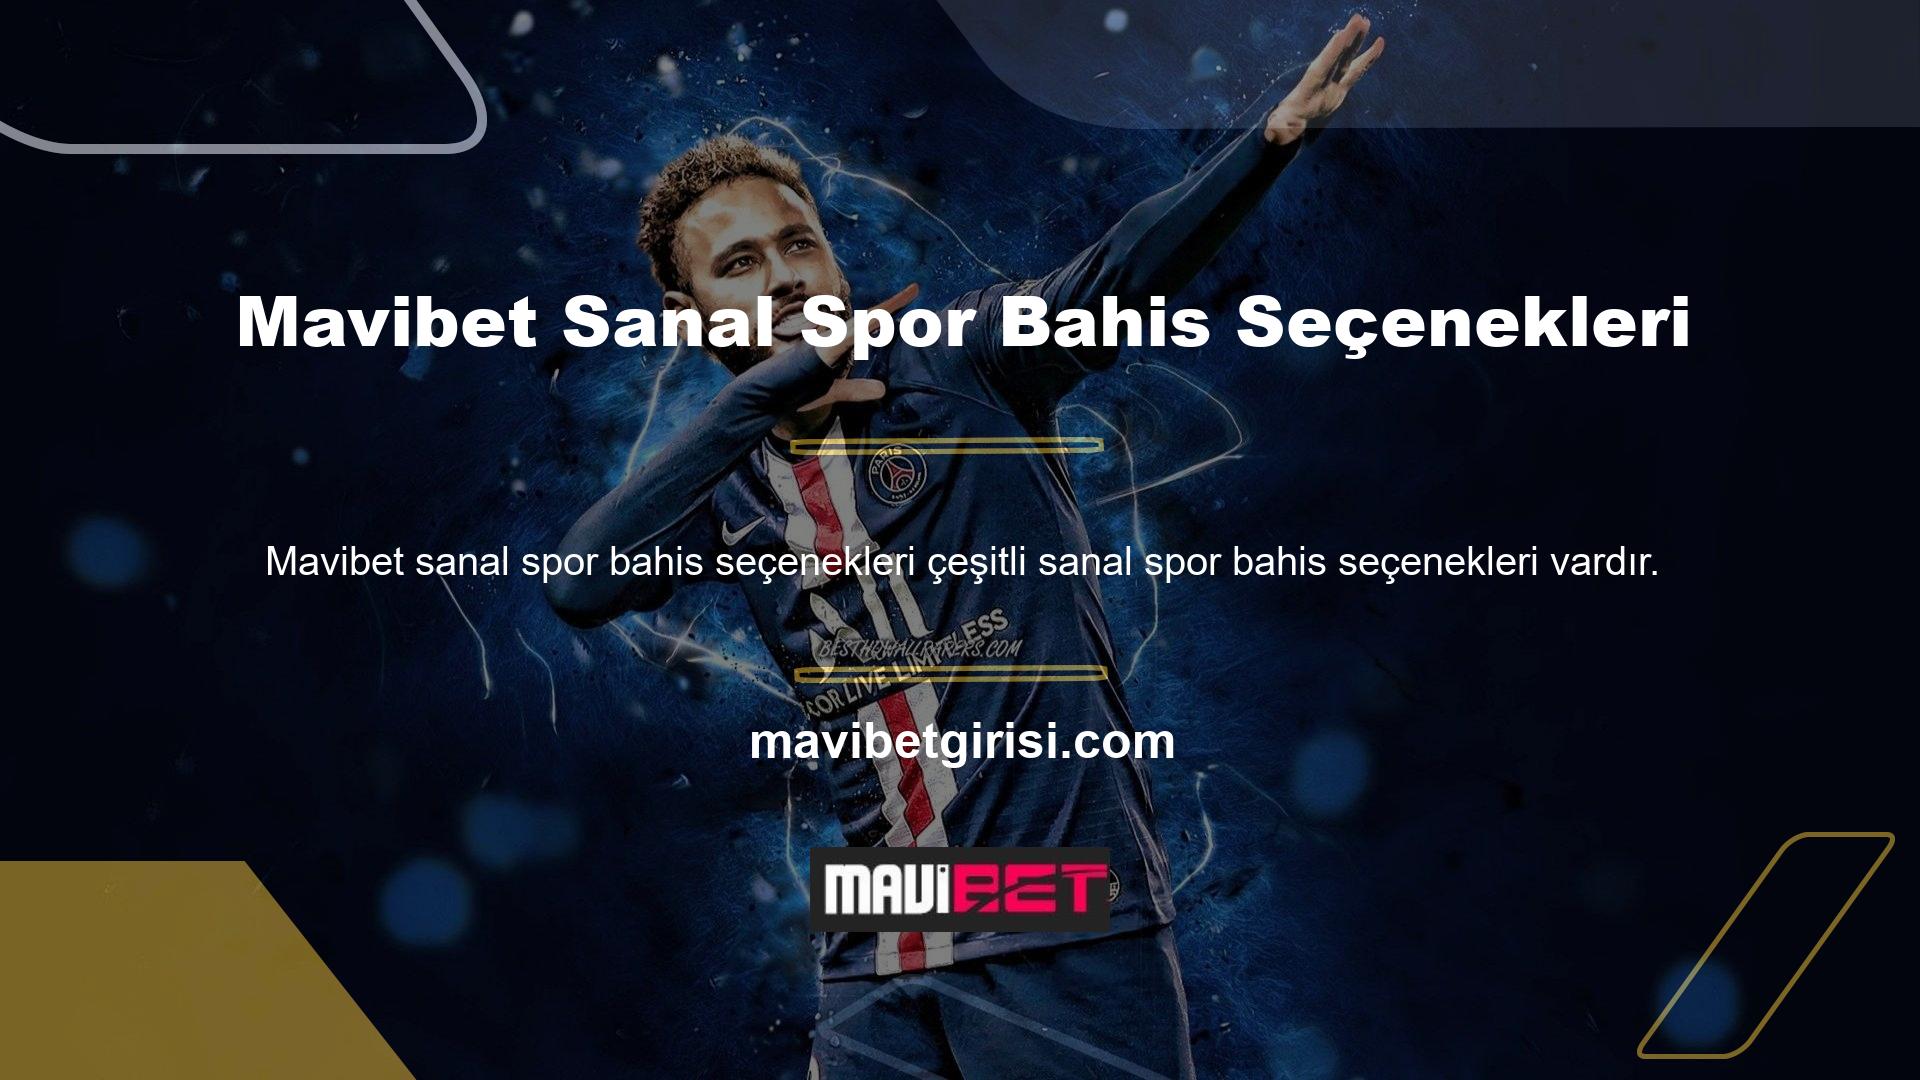 Mavibet online bahis sitesi tüm bu hizmetleri detaylı sanal spor bahis hizmetleri ile birlikte kullanıcılarına sunmaktadır